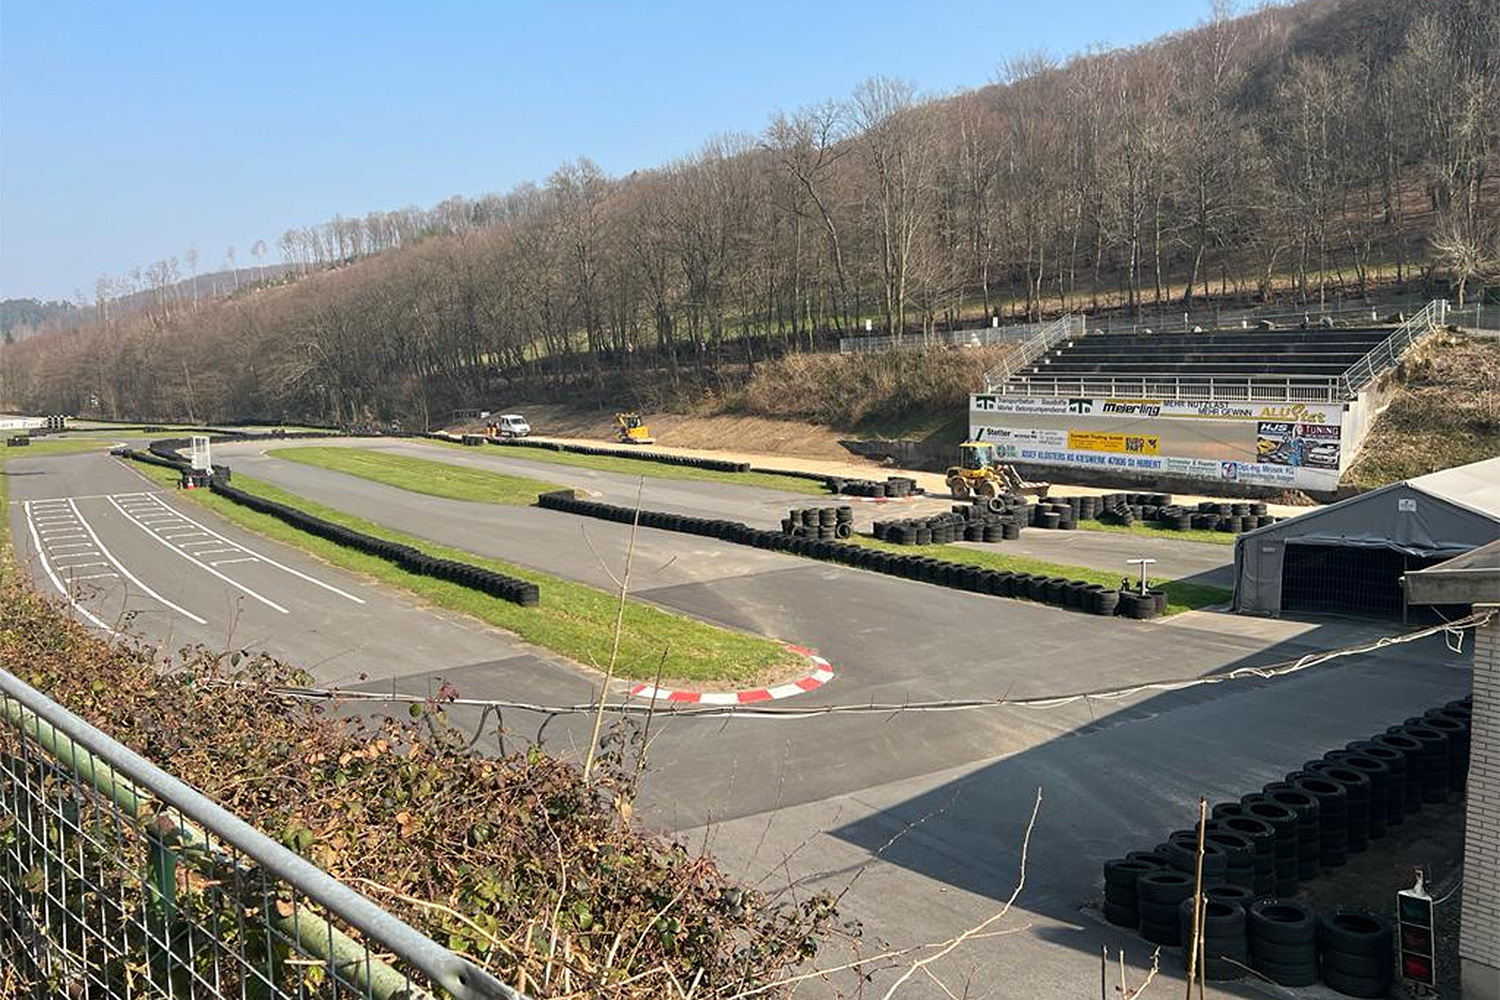 Startfrei im Motodrom Hagen: Am 1. April öffnet die Kartbahn